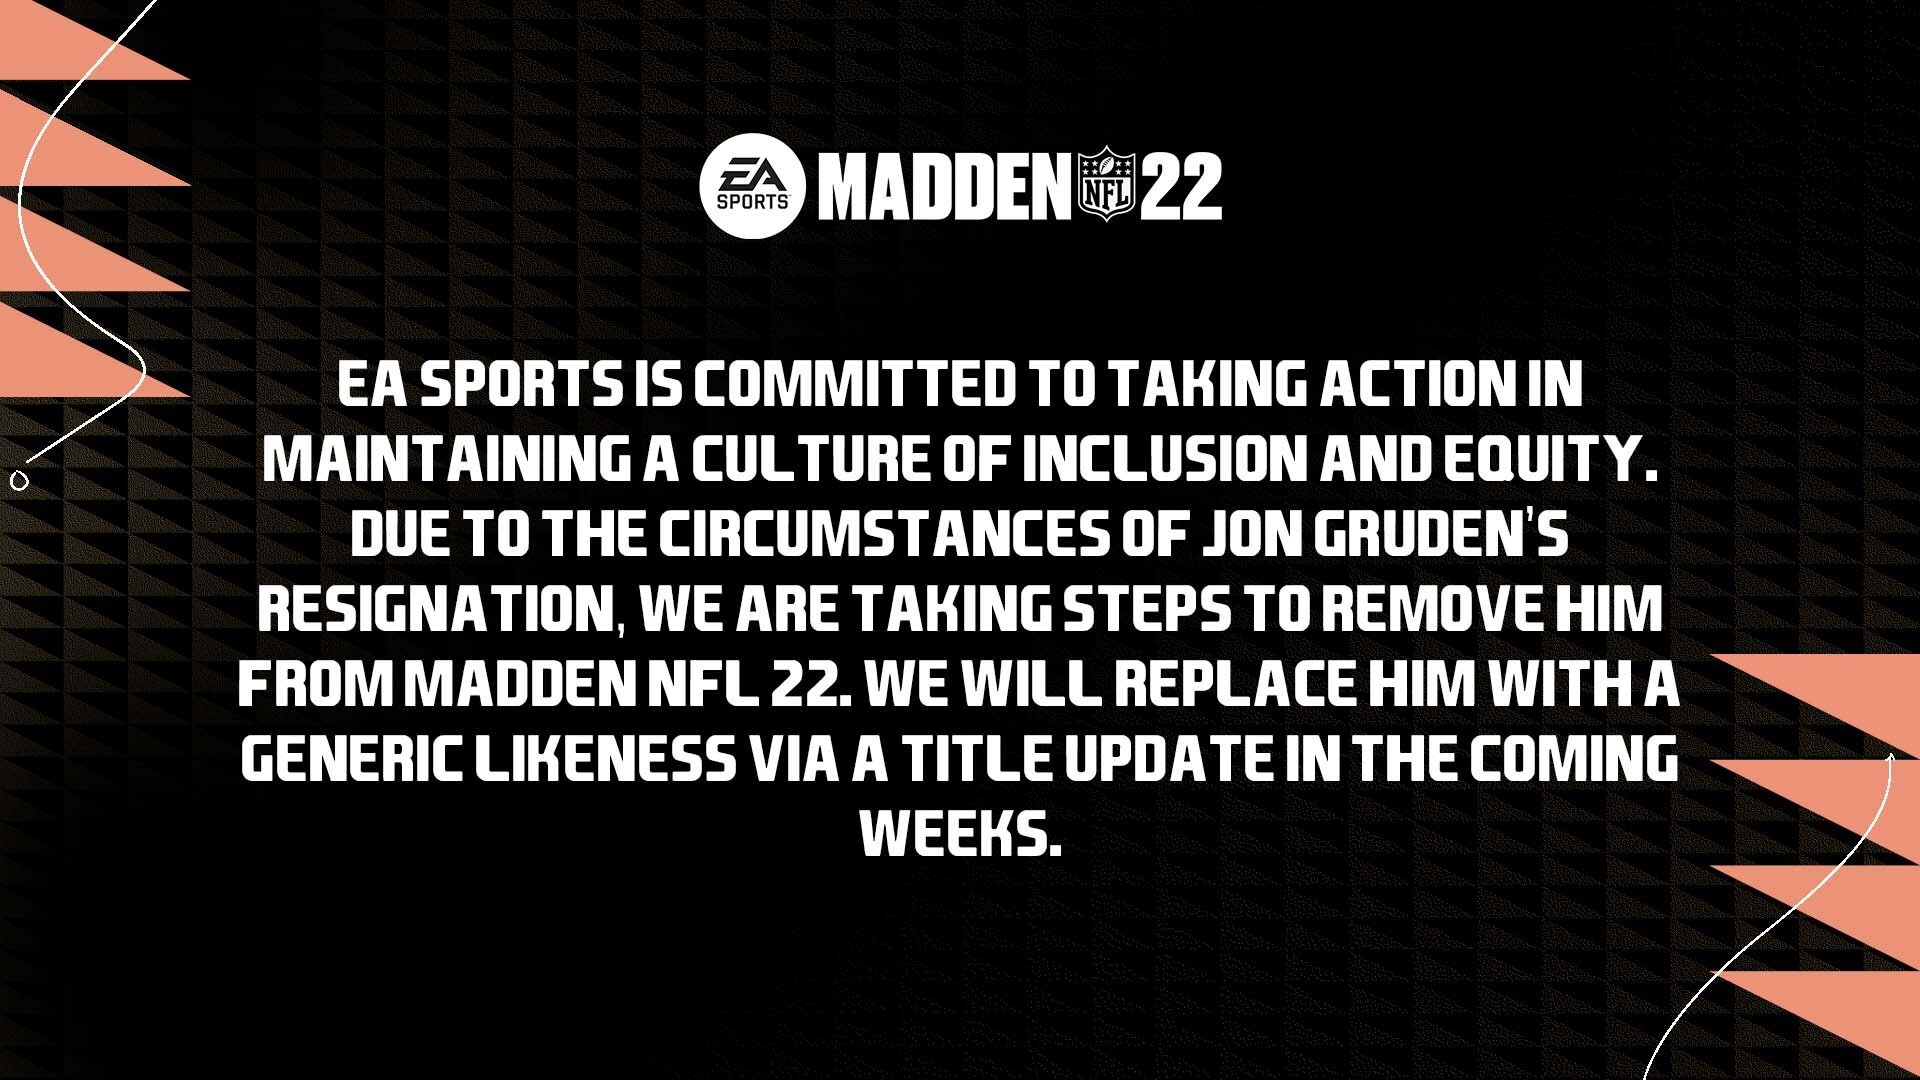 EA tar bort NFL-tränare från Madden NFL 22 efter skandal